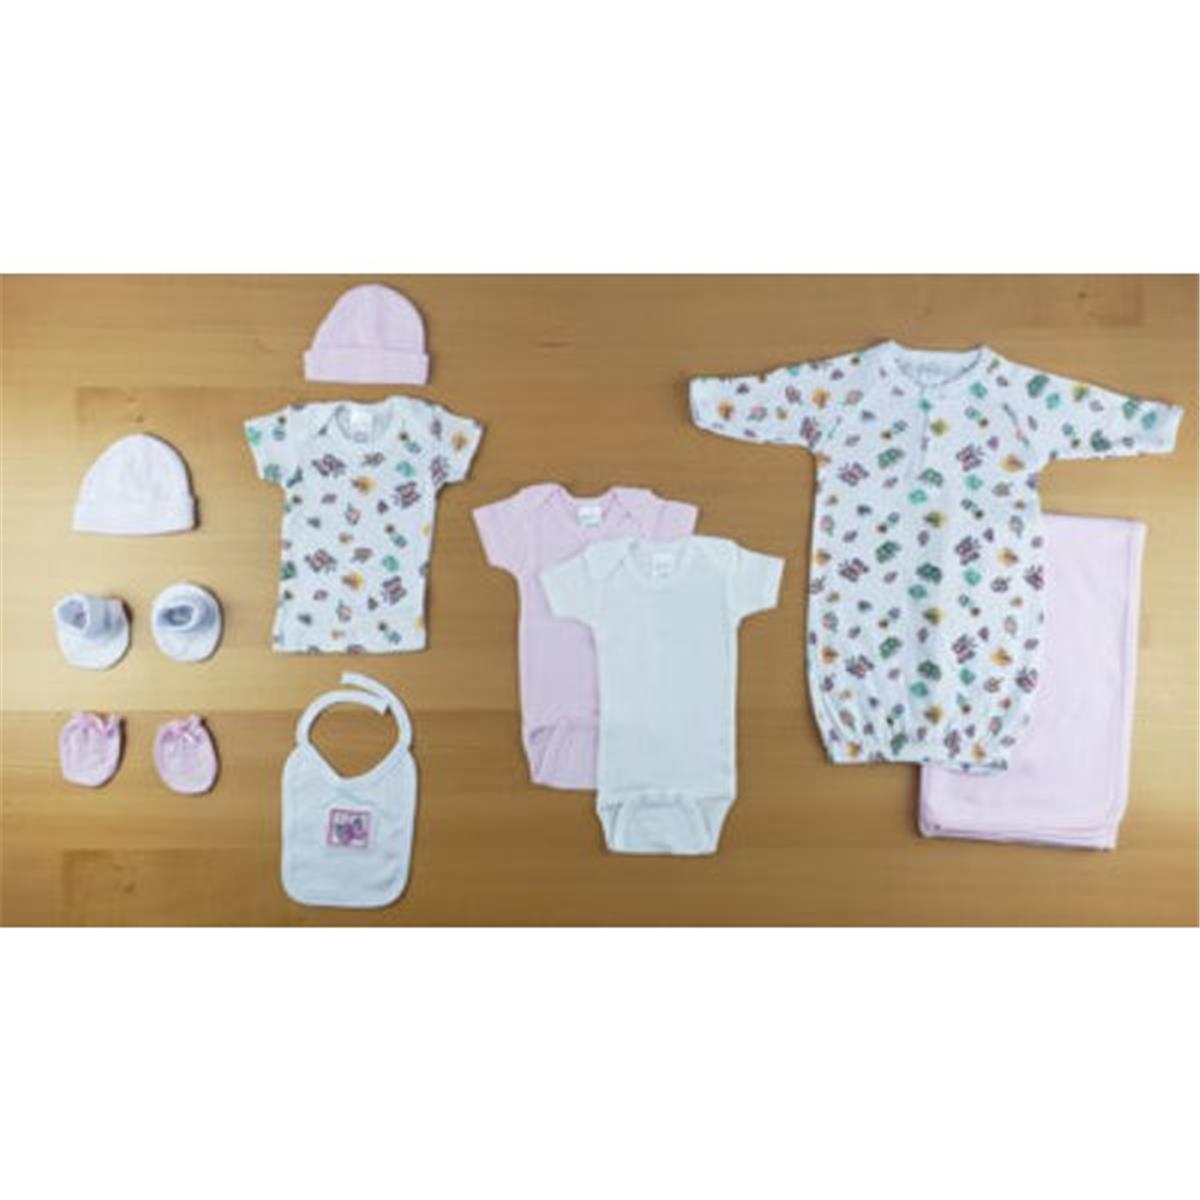 Bambini LS-0652 Newborn Girls Baby Shower Gift Set&#44; White & Pink - Newborn